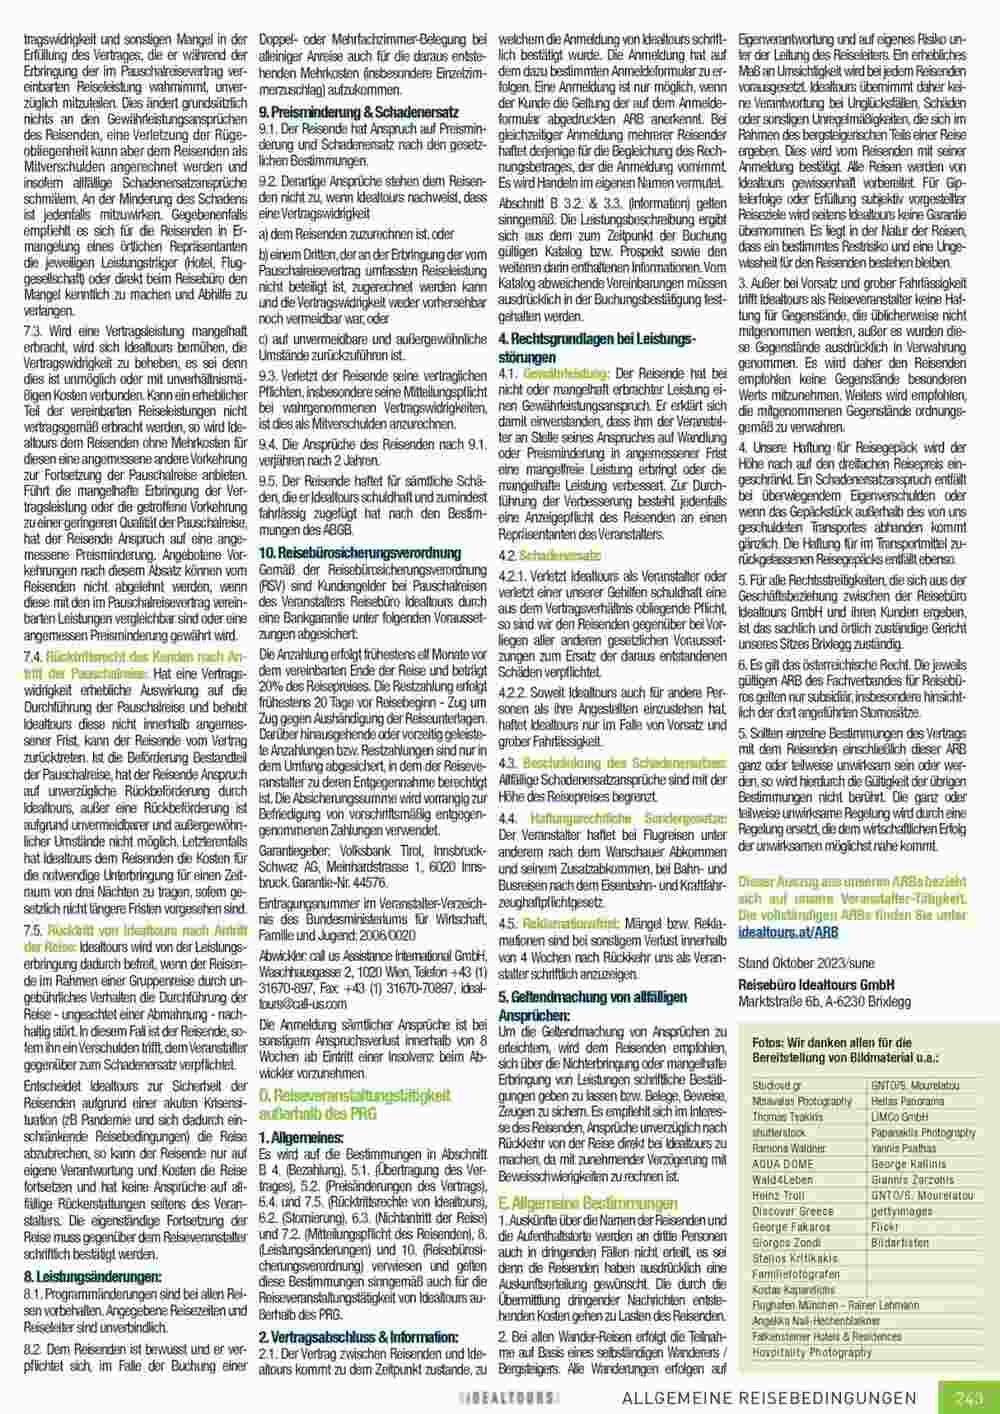 Idealtours Flugblatt (ab 15.11.2023) - Angebote und Prospekt - Seite 243